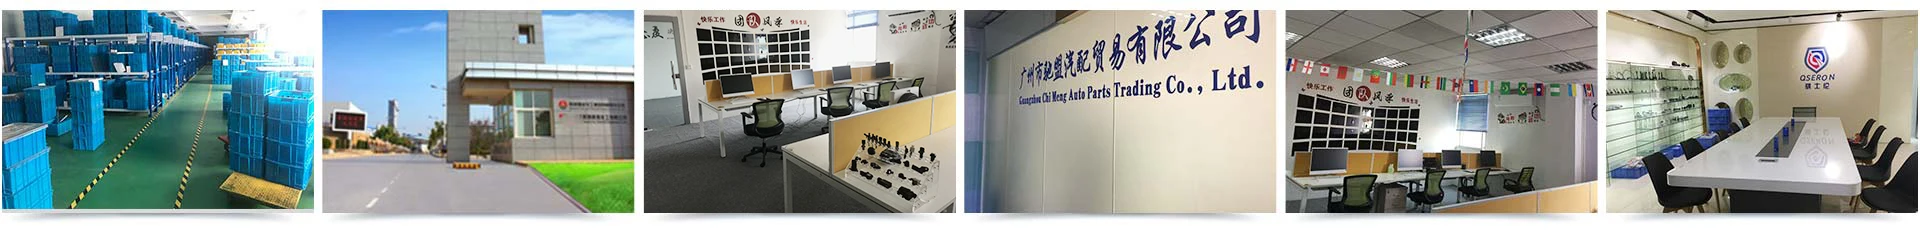 Guangzhou Chi Meng Auto Parts Trading Co., Ltd. - compressor control ...